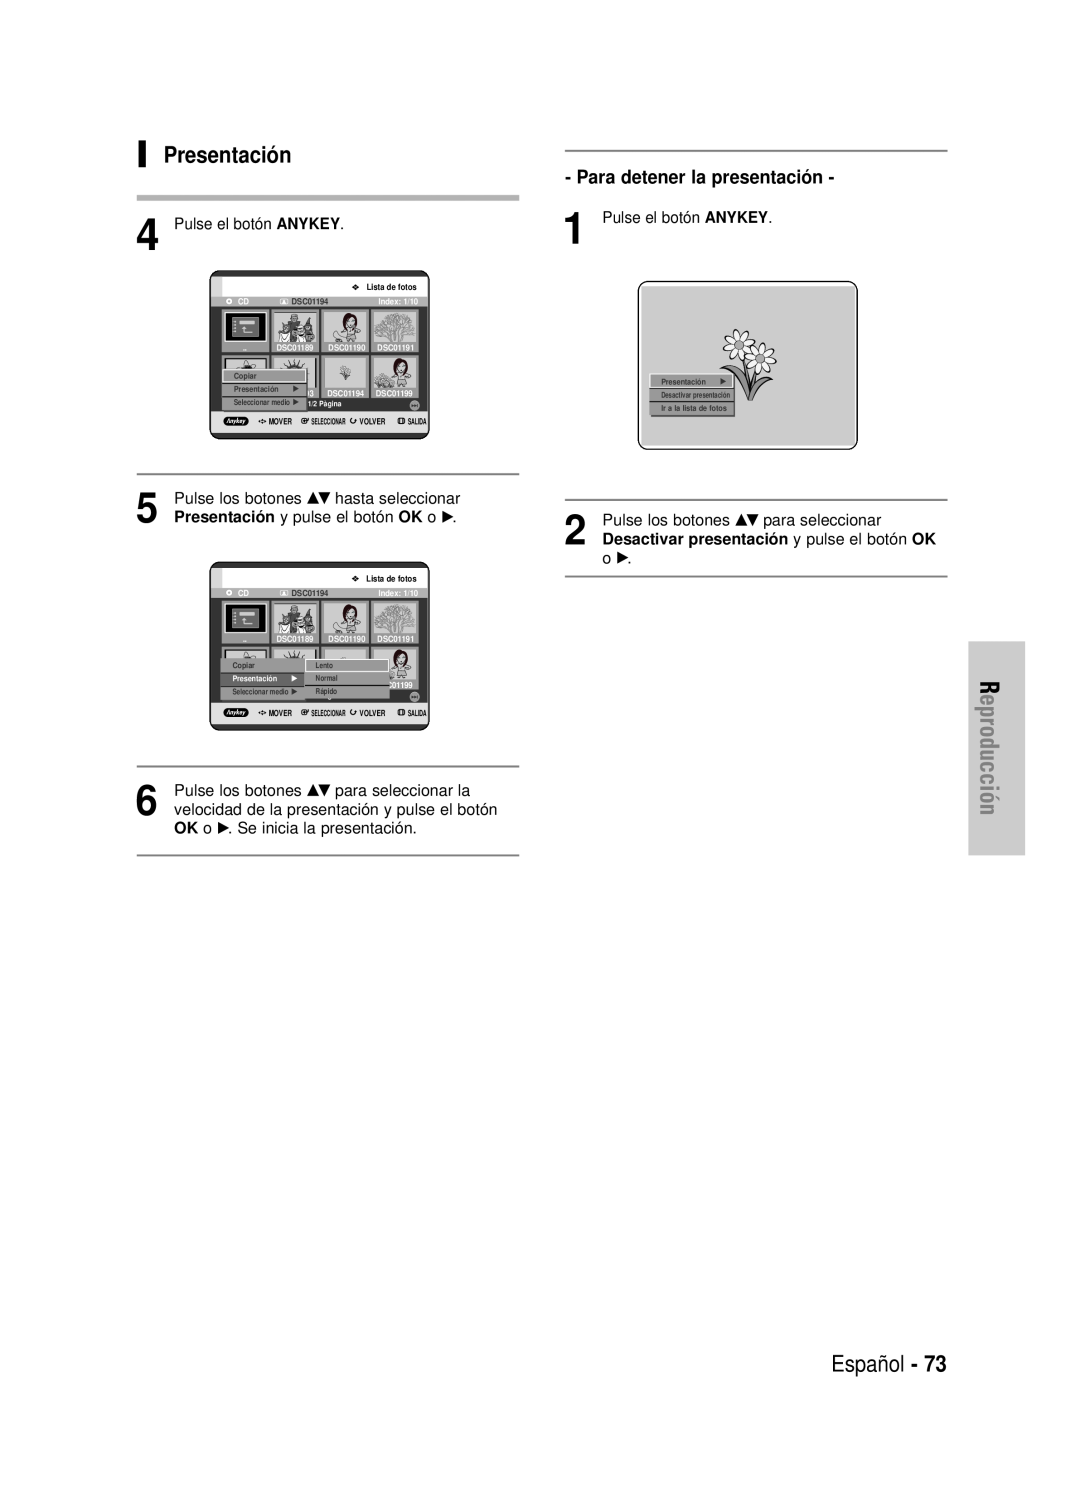 Samsung DVD-HR725/XEF, DVD-HR725/XEG, DVD-HR725/XET manual Presentación, Reproducción, Español, Para detener la presentación 